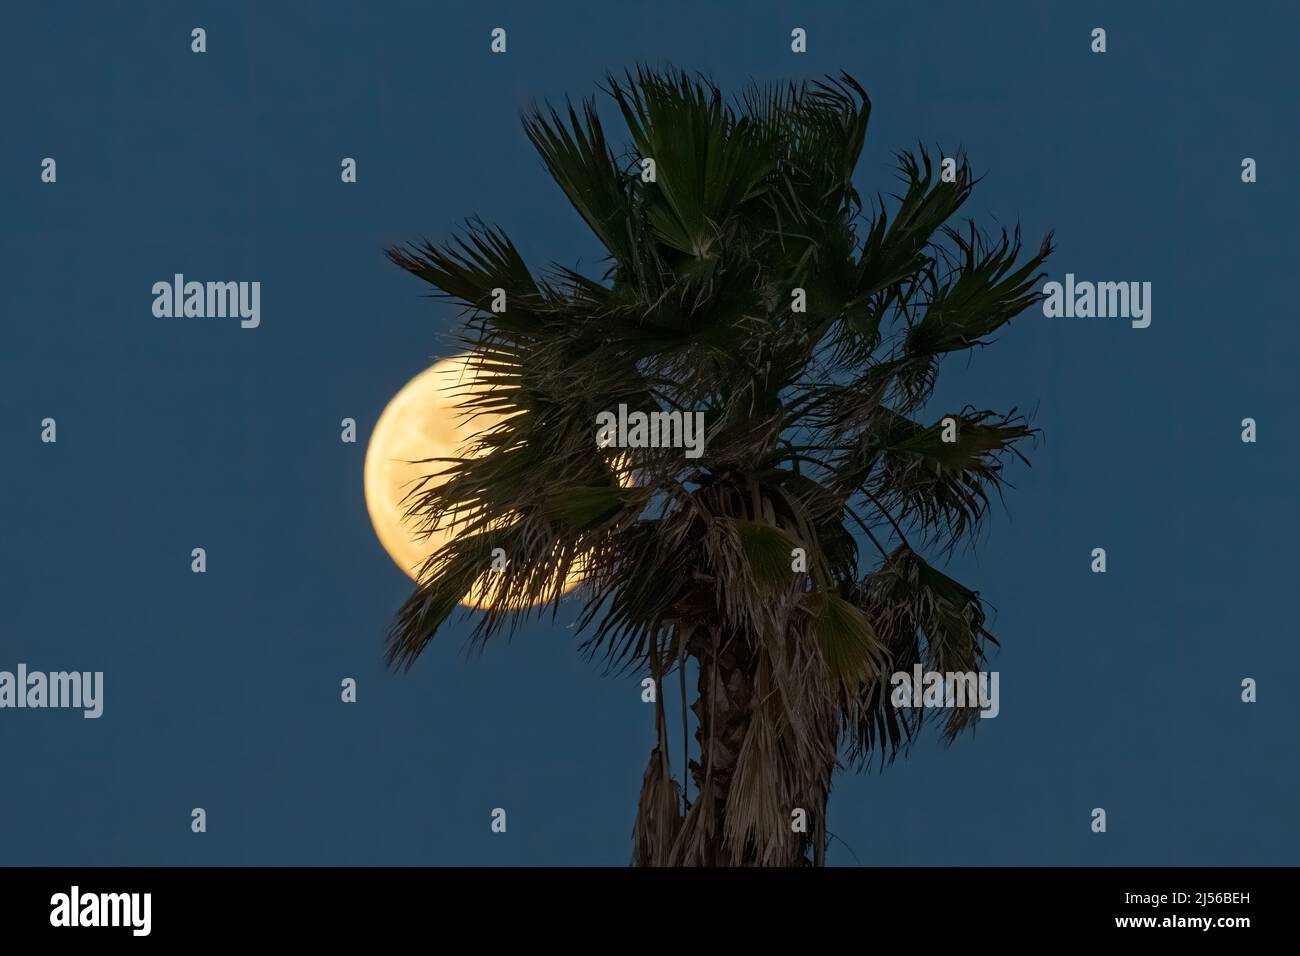 La Luna Llena del Lobo levantándose detrás de una palmera del ventilador en enero como visto desde la Isla del Padre del Sur, Tejas. Foto de stock